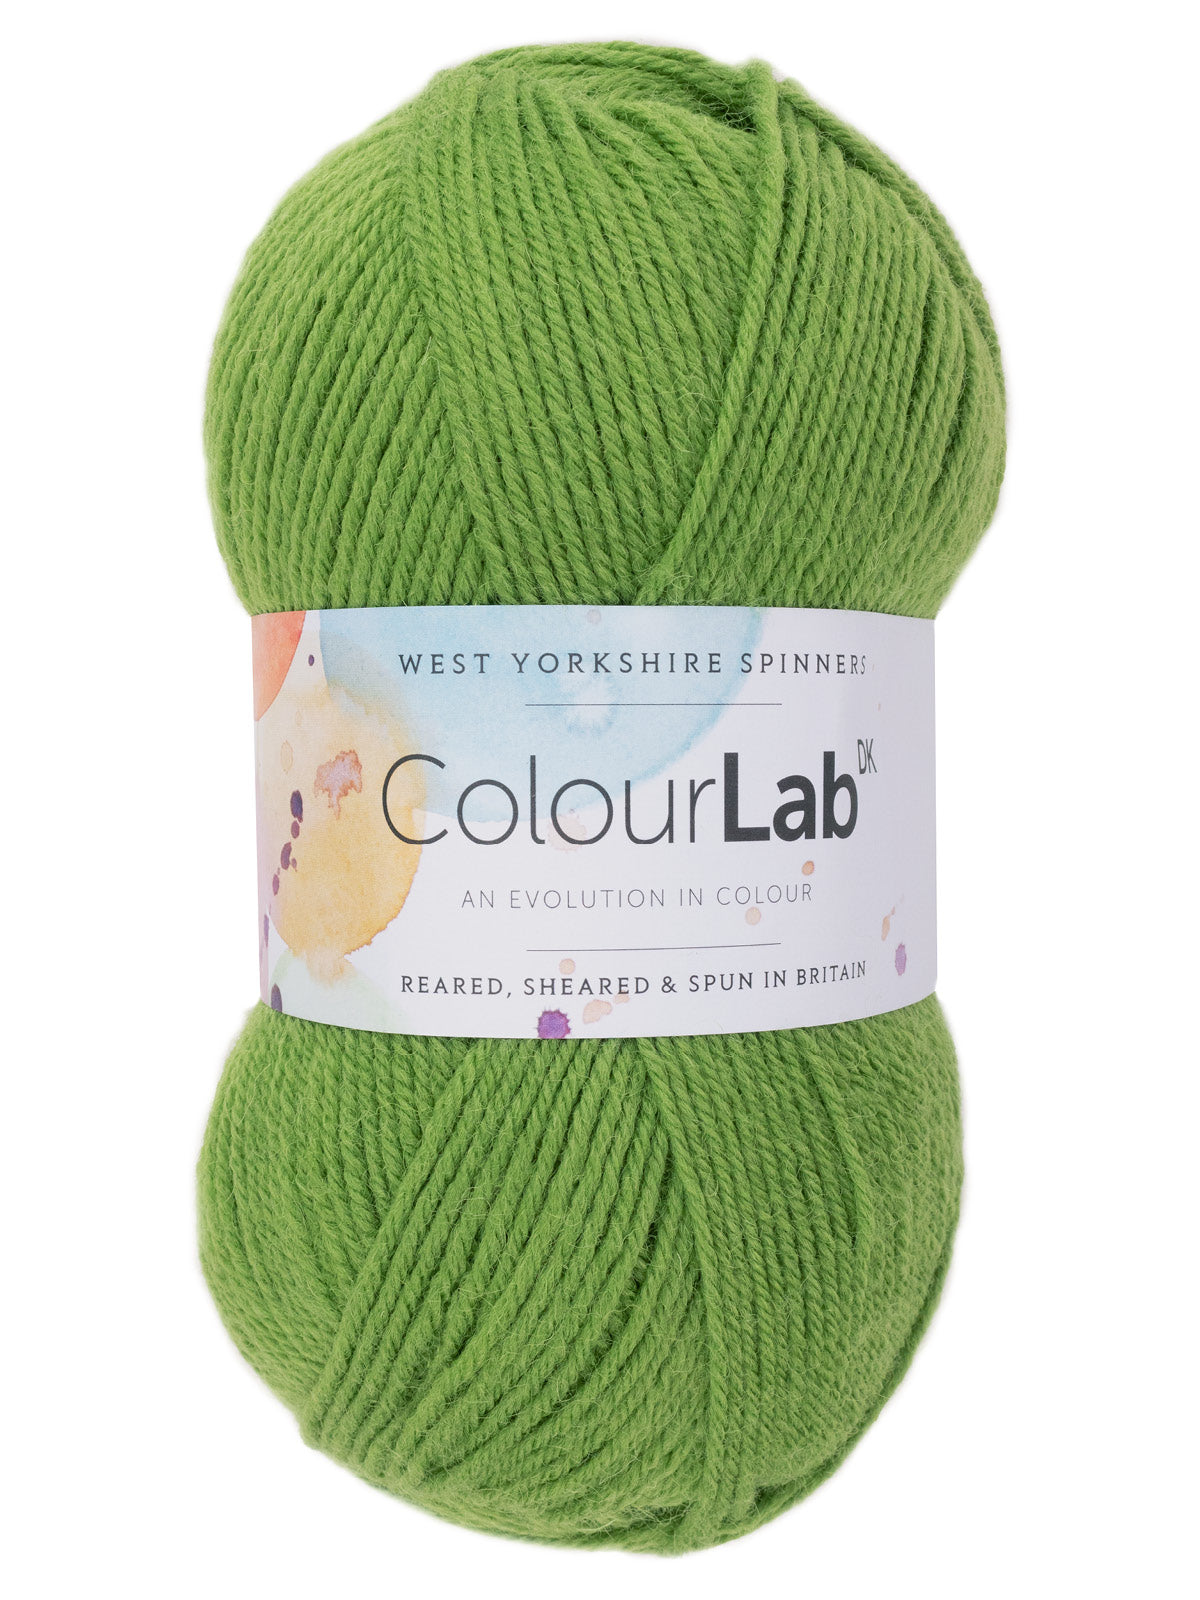 West Yorkshire Spinners ColourLab DK WYS 100% wool yarn